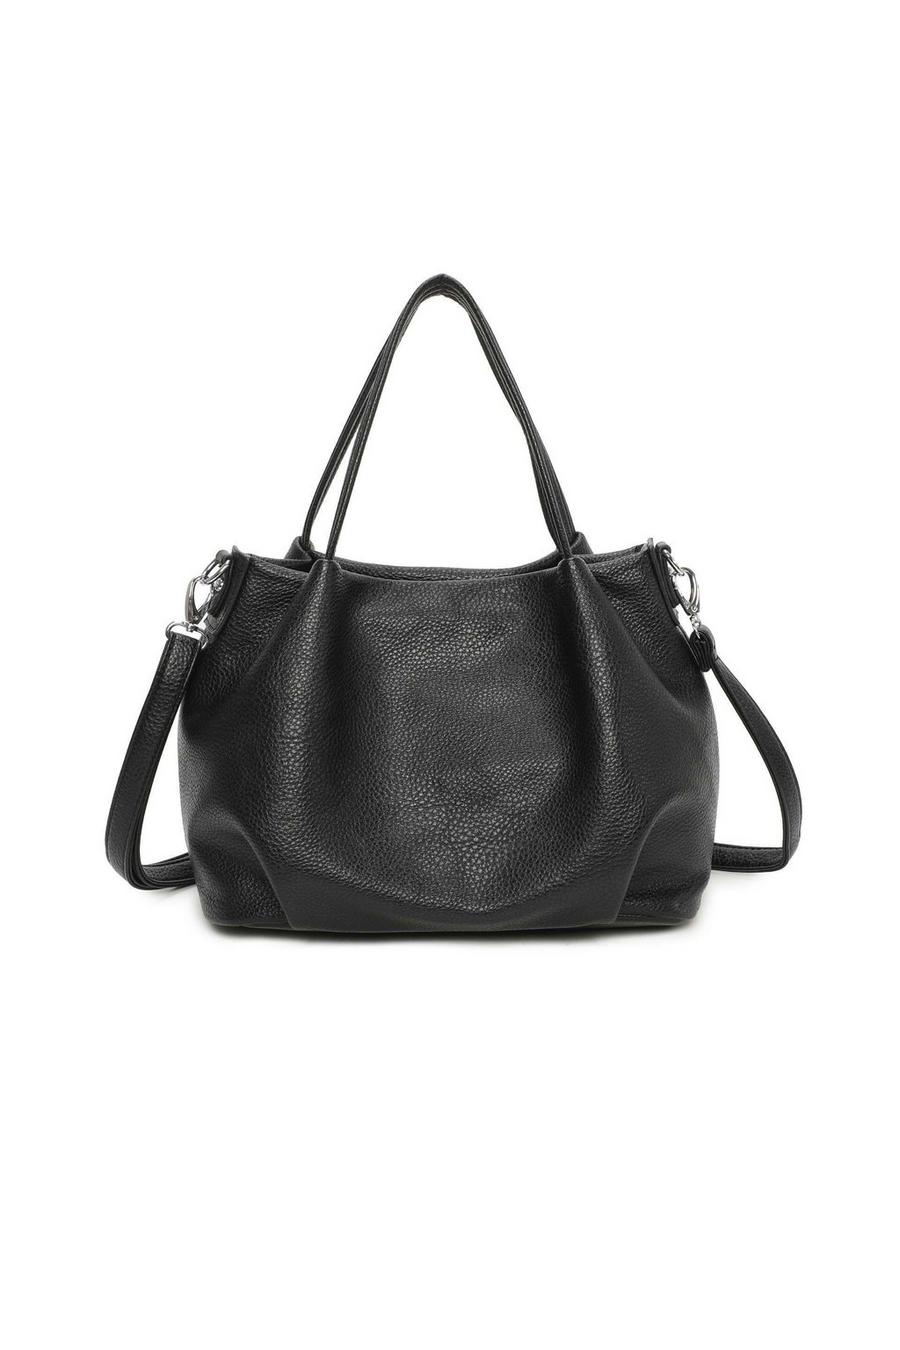 Black Rommy Soft PU Leather Shopper Handbag Shoulder Bag with Long Strap